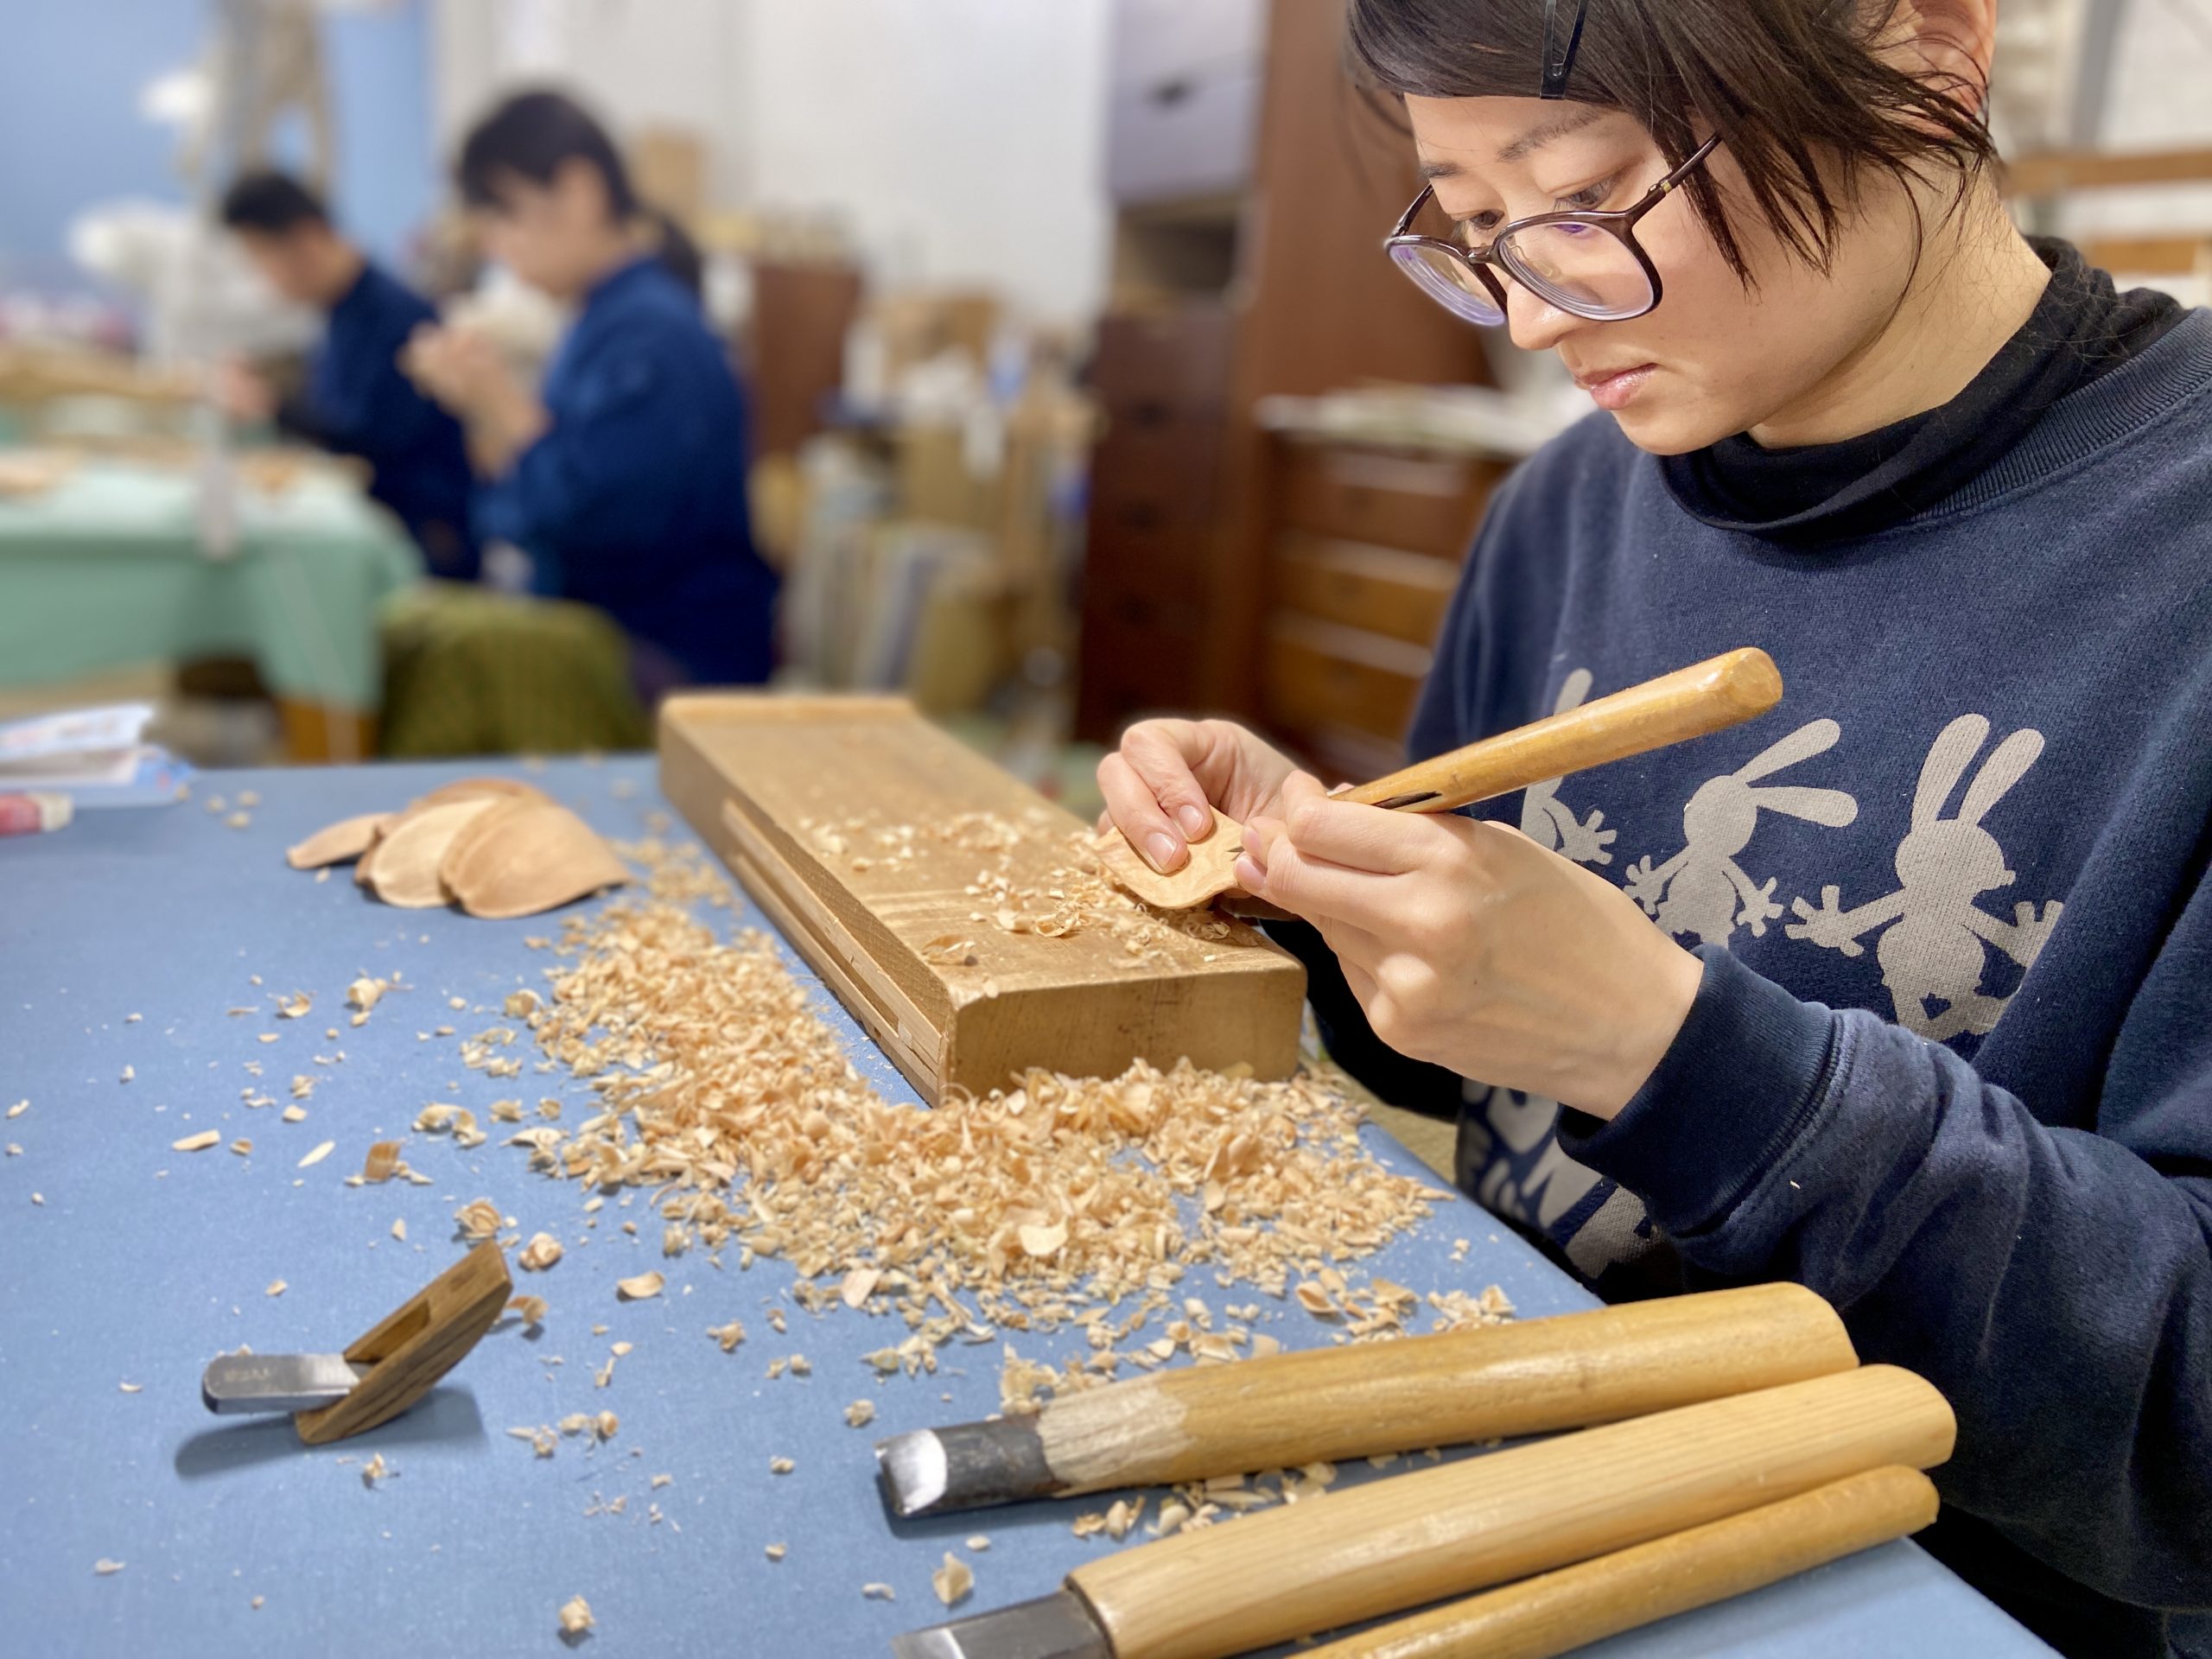 職人紹介 | 京の伝統工芸展 / Kyoto Traditional Crafts Exhibition